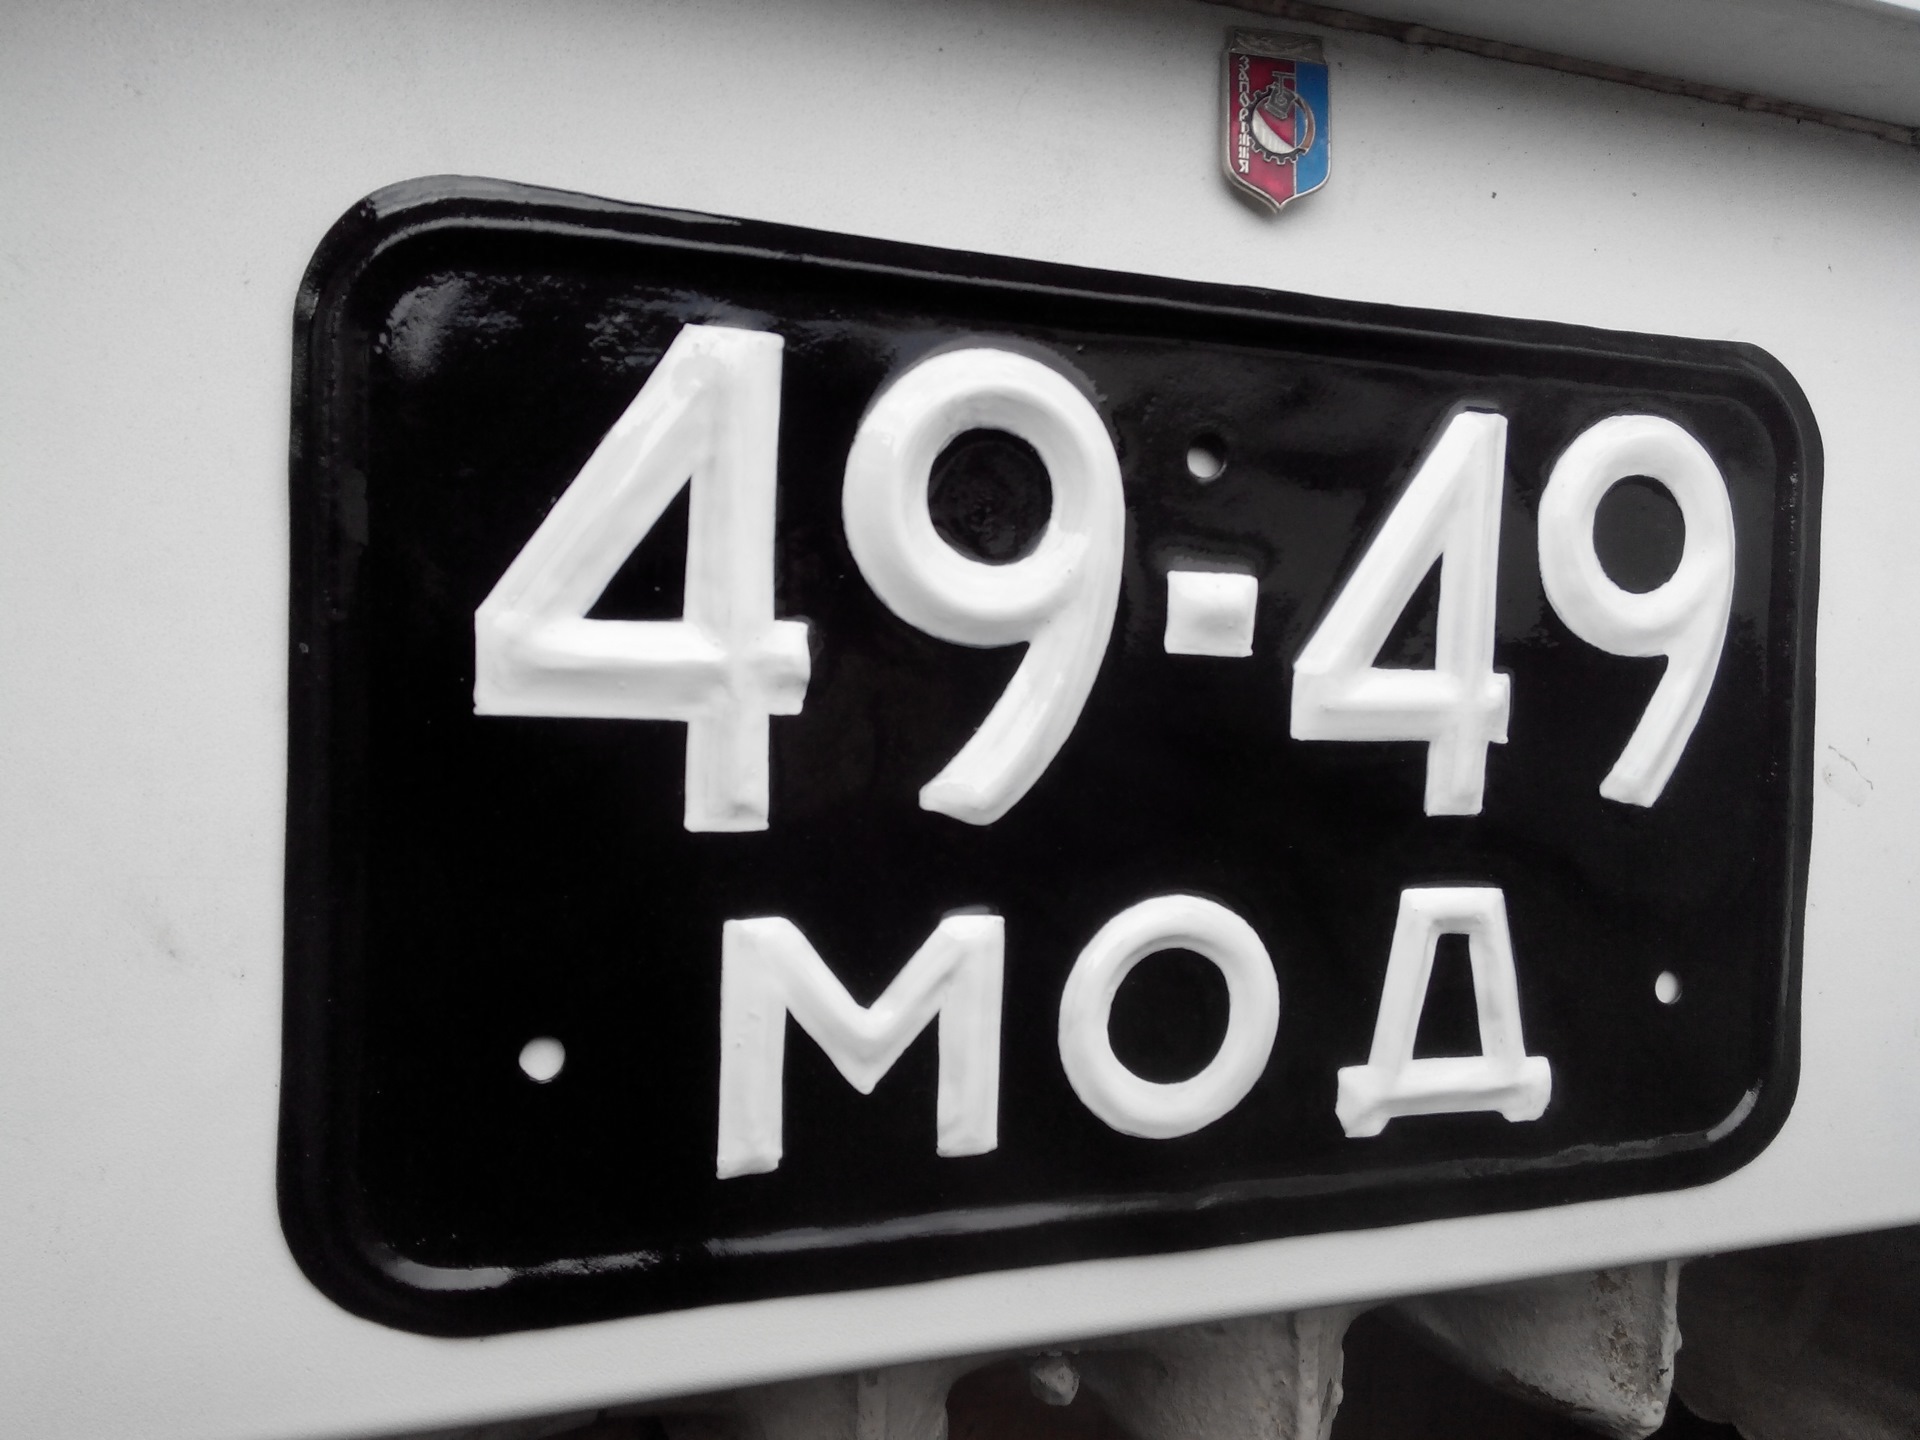 Гос номер автомобиля московская область. Автомобильные гос номера СССР. Гос номера СССР 1980. Старые авто номера. Советские номерные знаки.